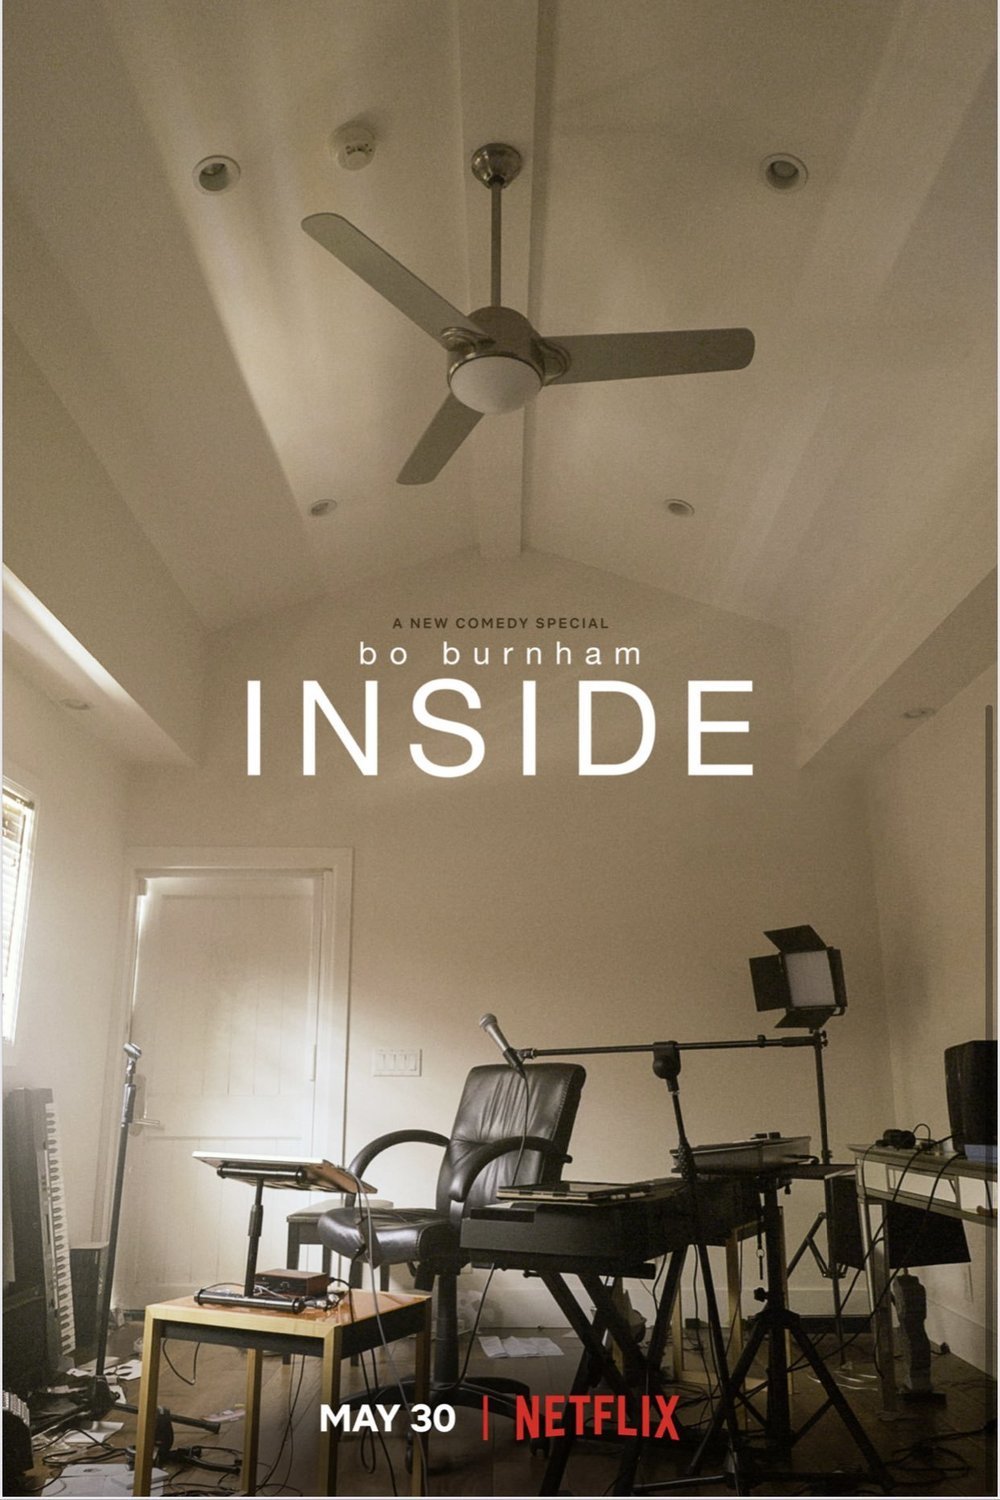 Poster of the movie Bo Burnham: Inside